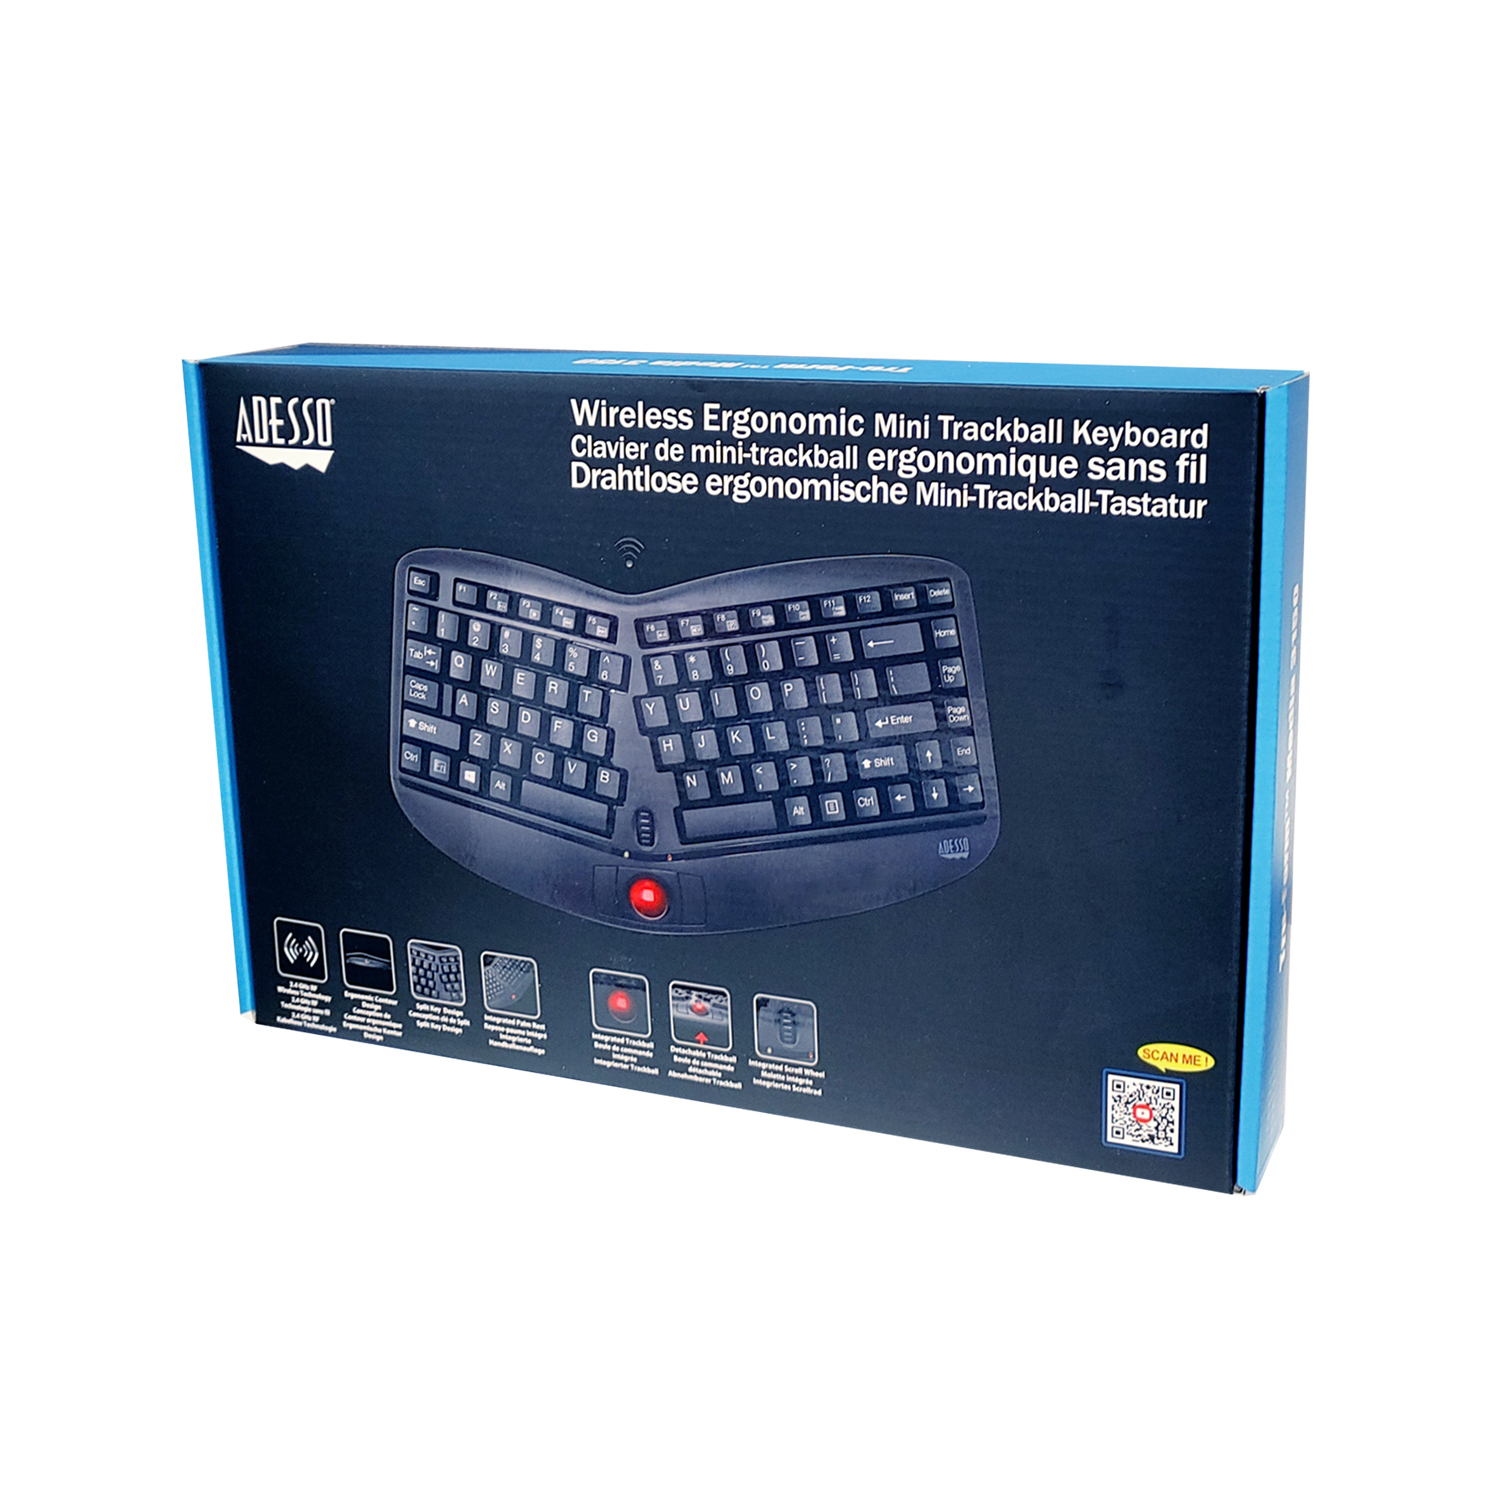 Tru-Form™ Media 3150 - 2.4 GHz Wireless Ergo Trackball Keyboard 